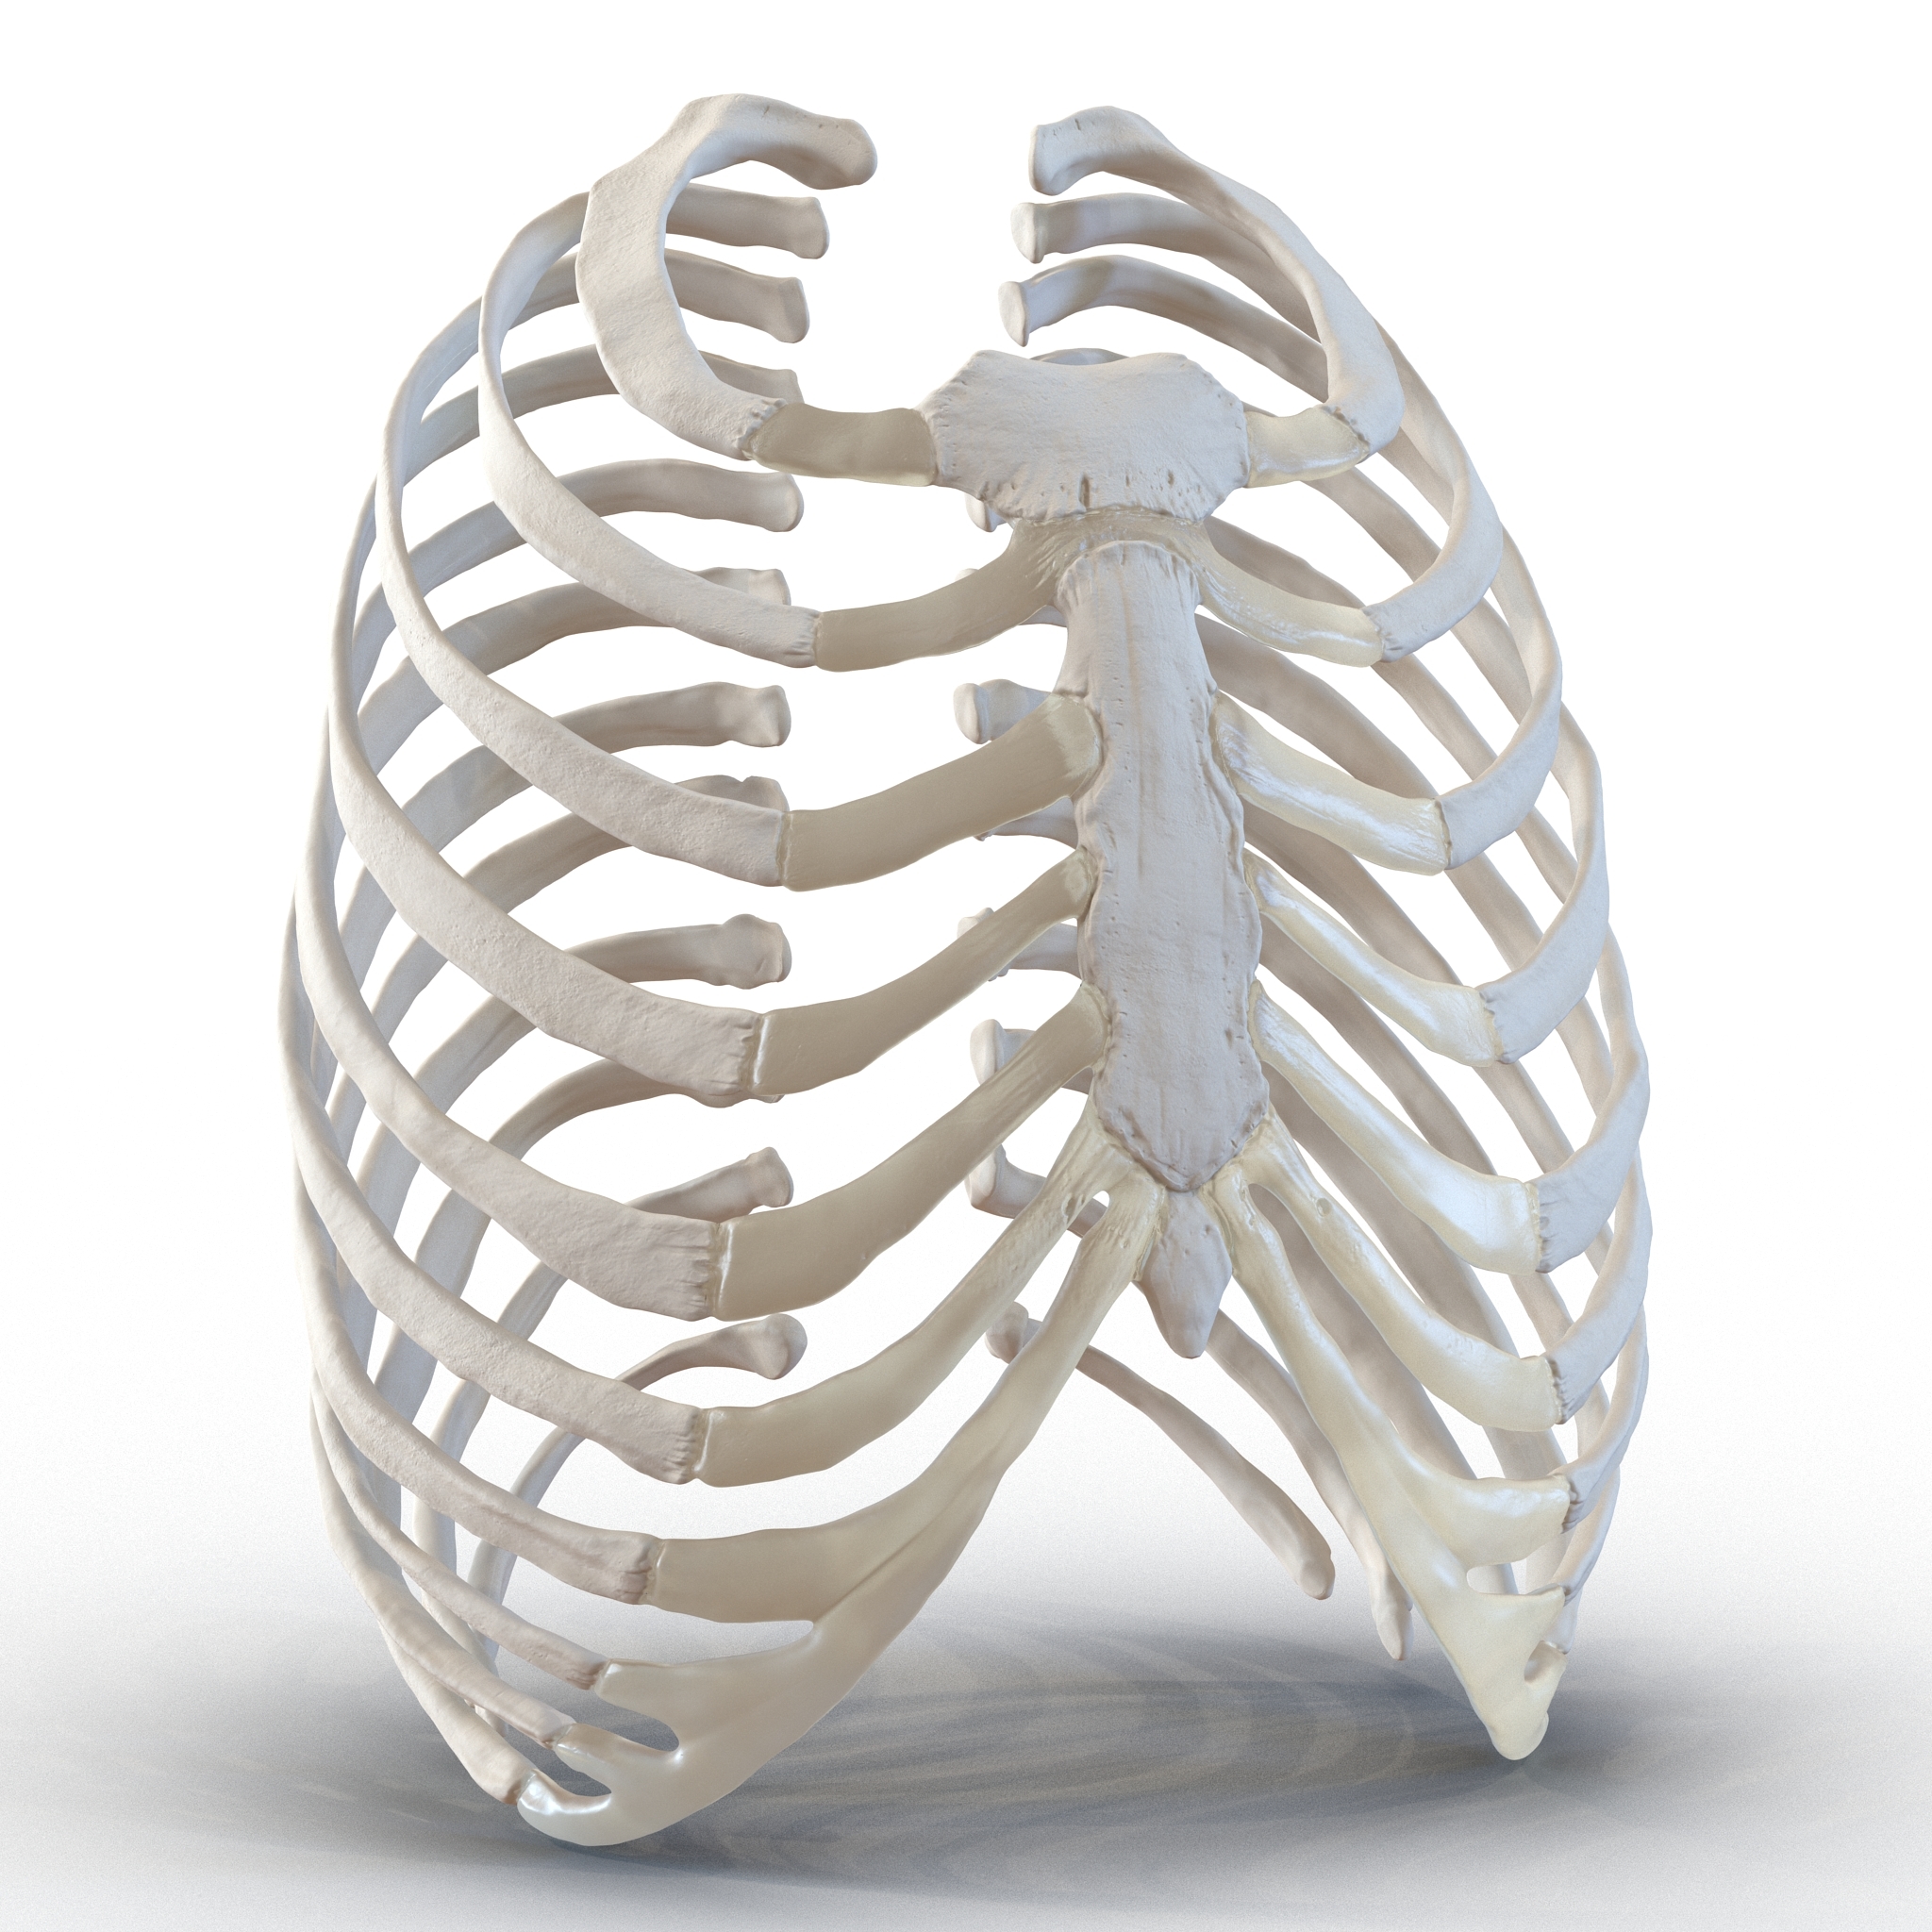 胸骨模型图图片